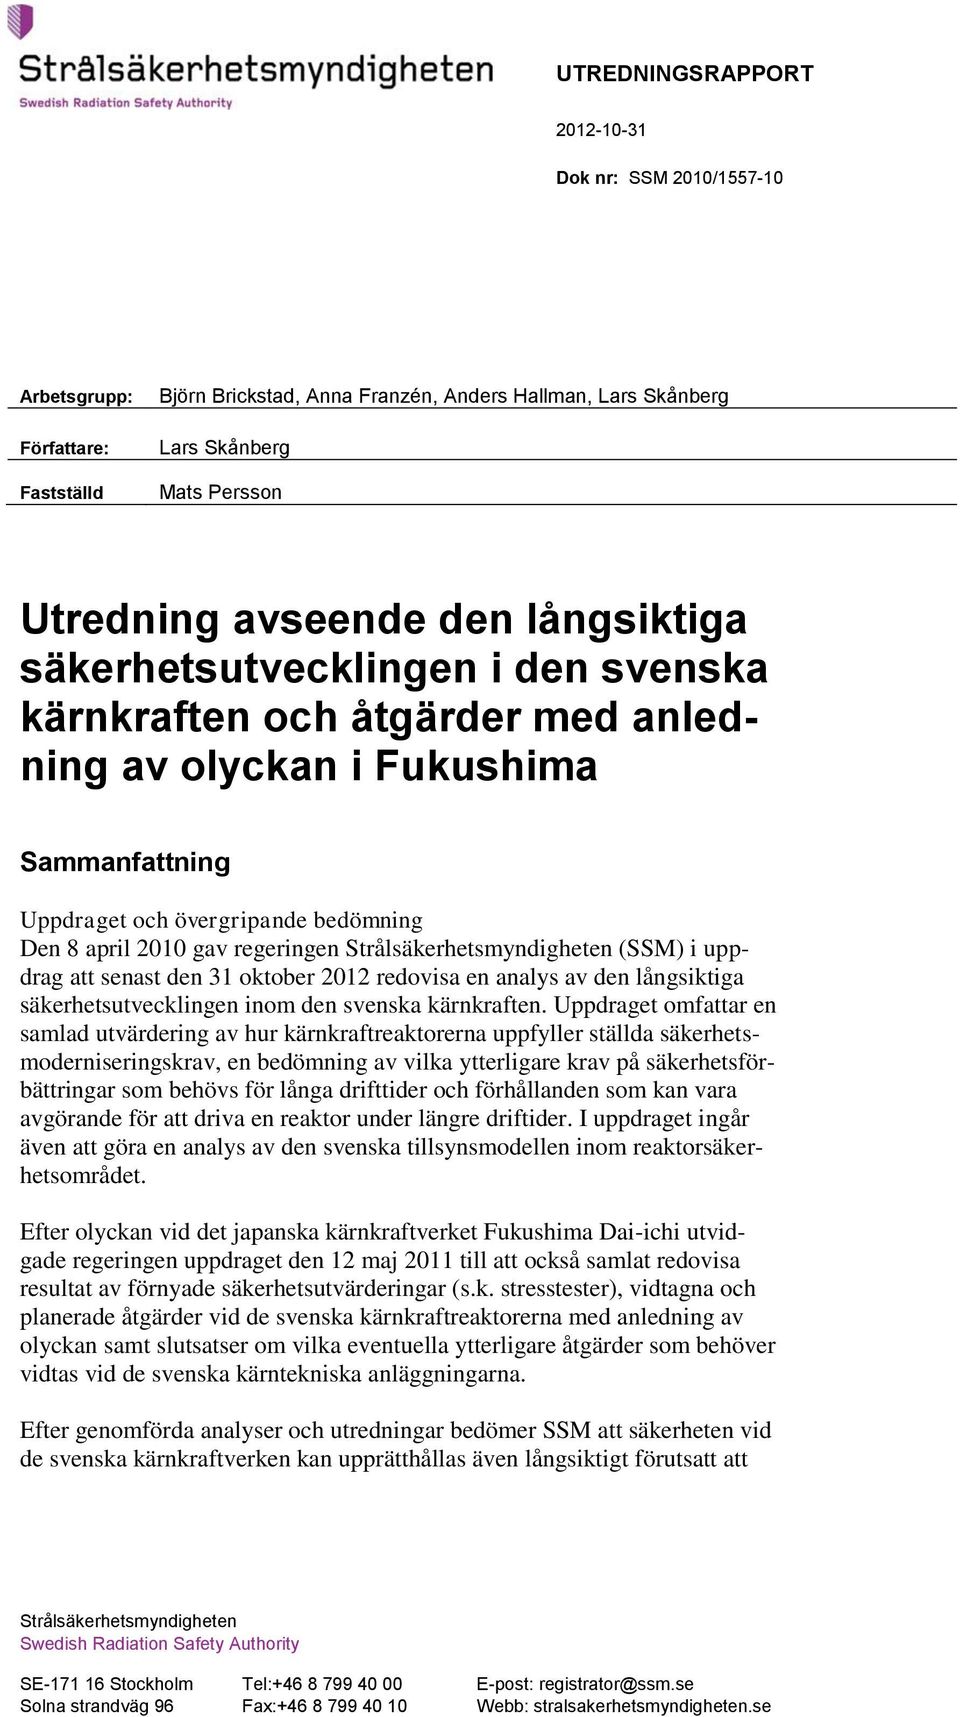 Strålsäkerhetsmyndigheten (SSM) i uppdrag att senast den 31 oktober 2012 redovisa en analys av den långsiktiga säkerhetsutvecklingen inom den svenska kärnkraften.